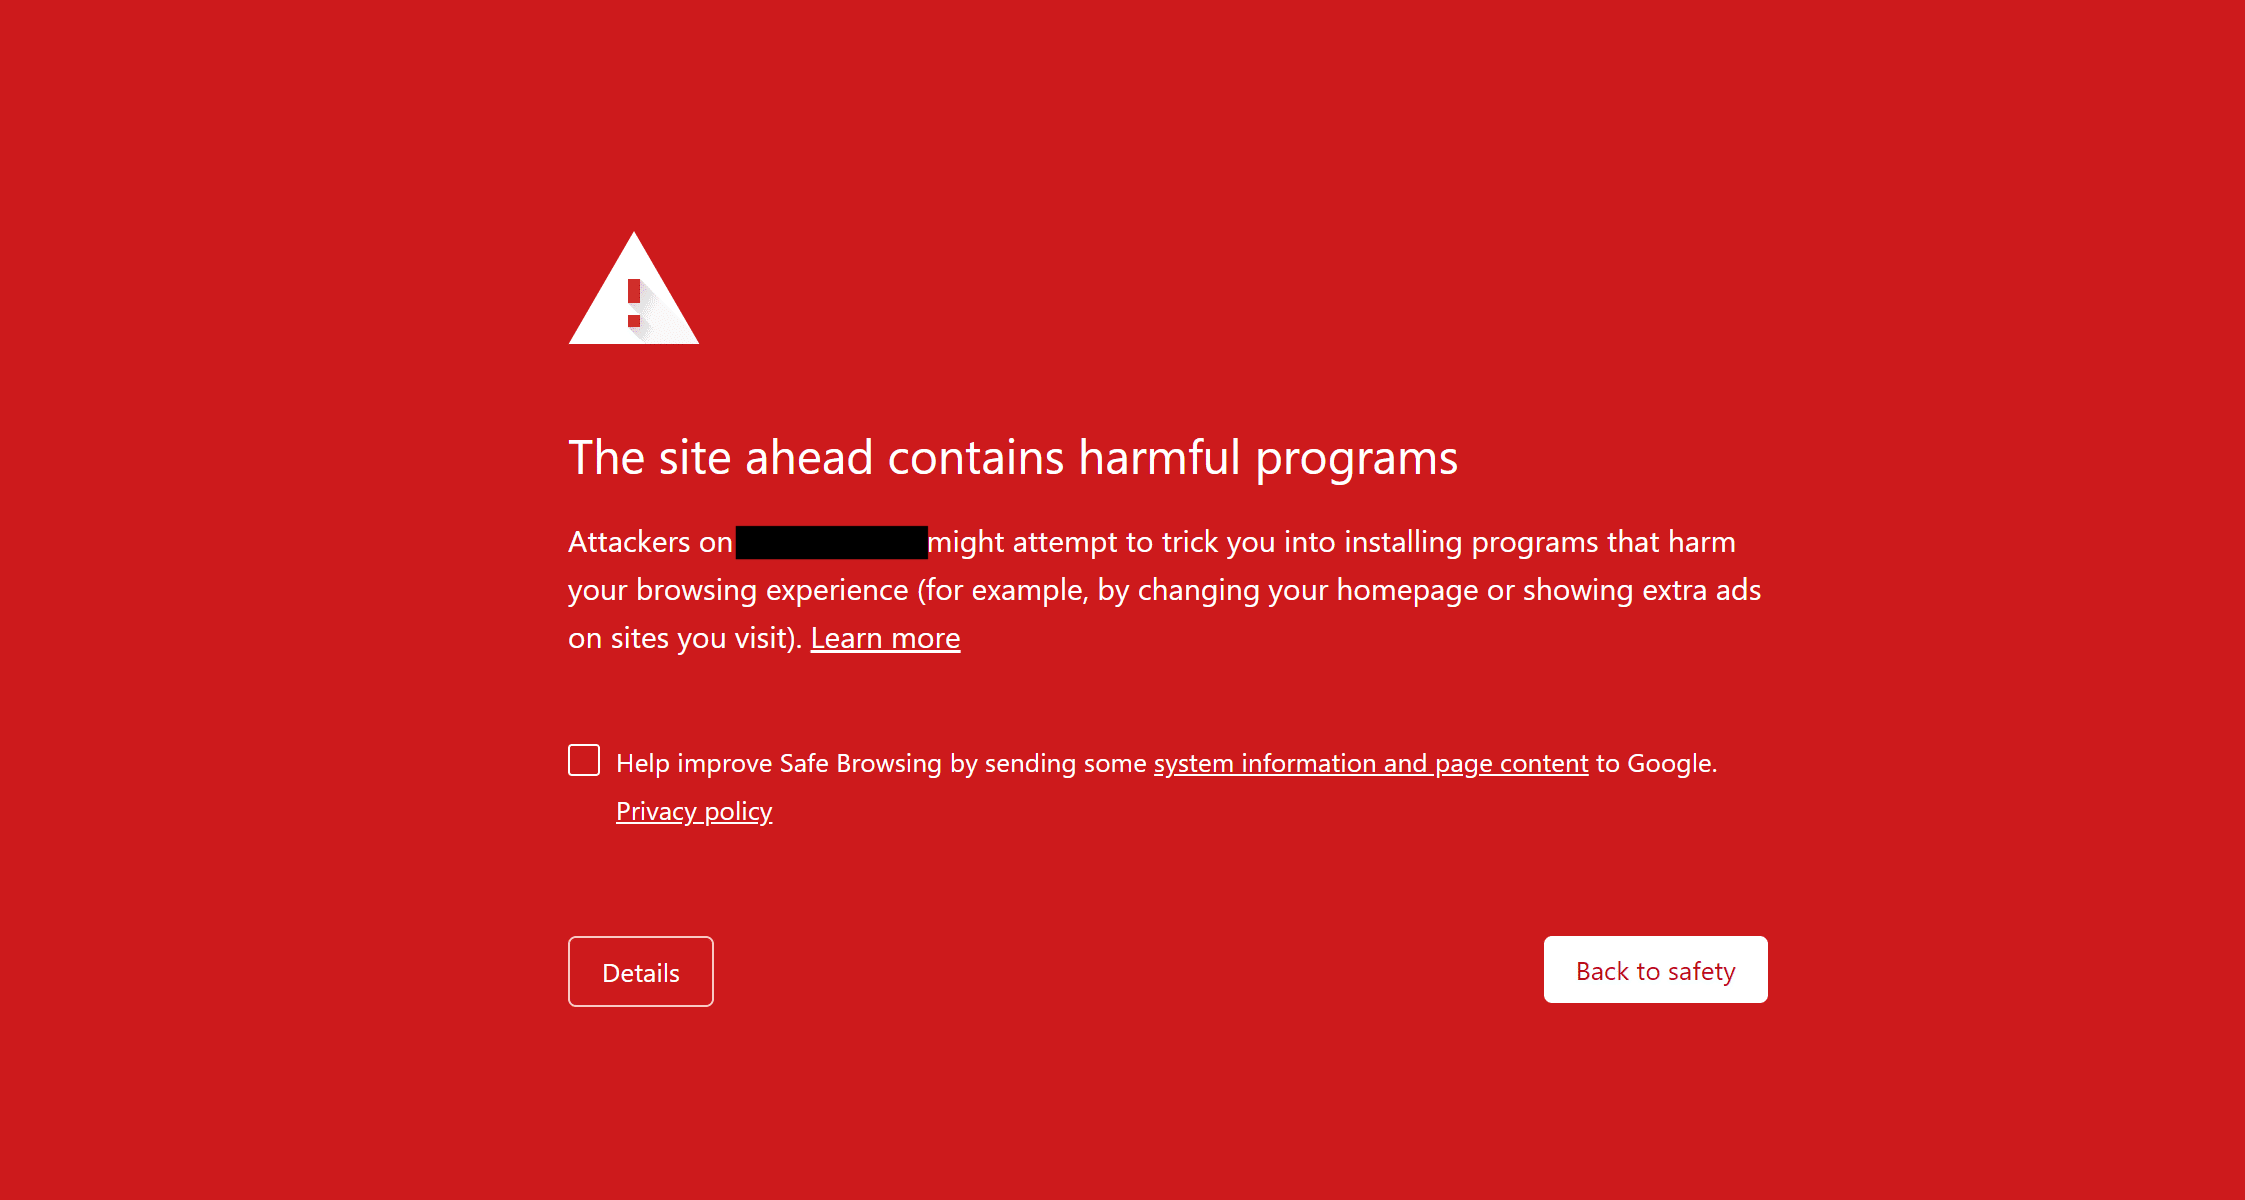 Hướng dẫn sửa lỗi “The site ahead contains malware” trên WordPress 1